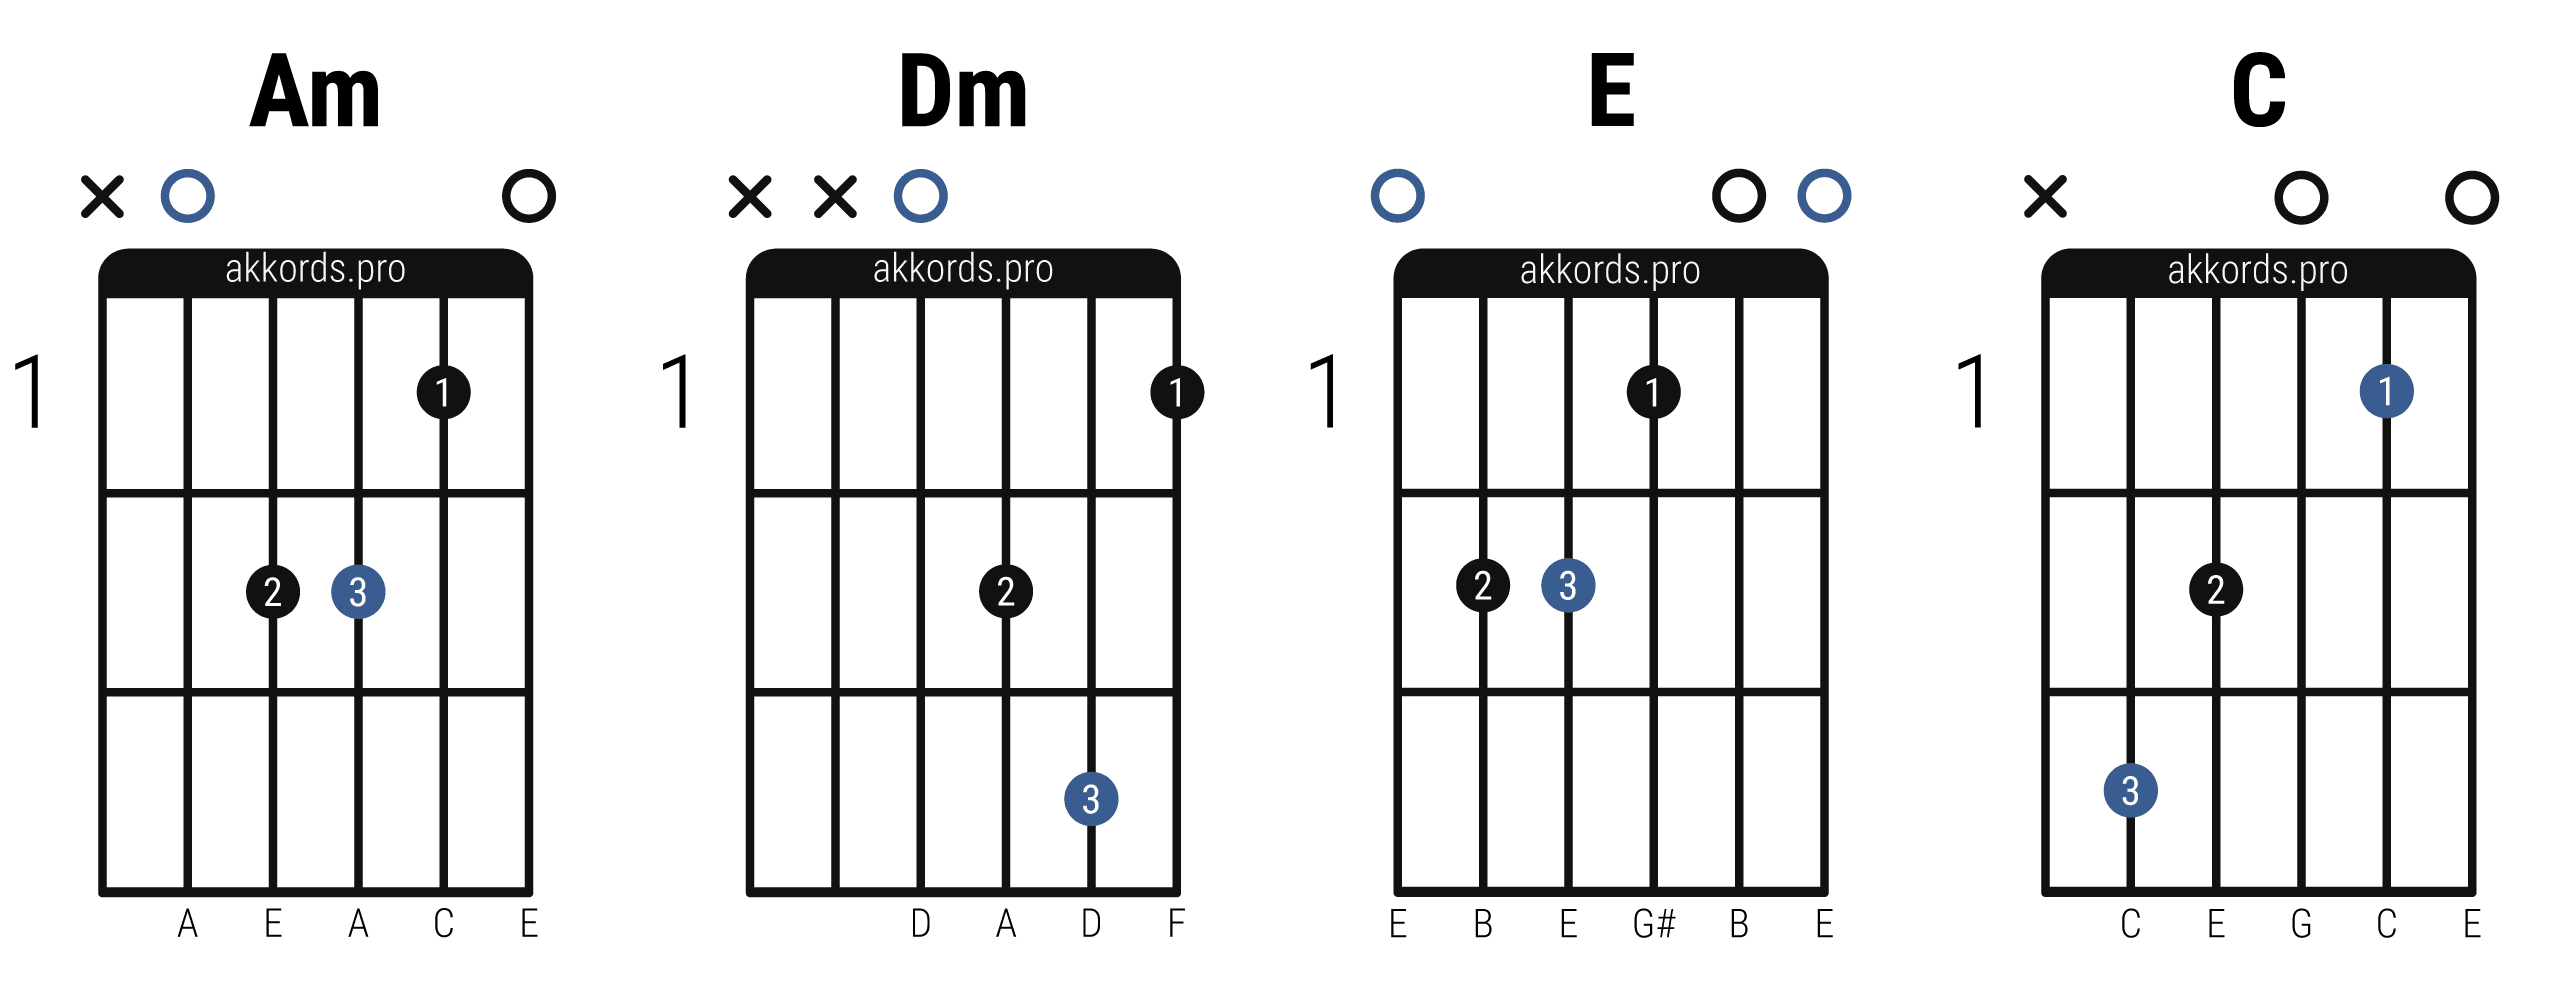 Основные аккорды на гитаре для начинающих: Am, Dm, E, C